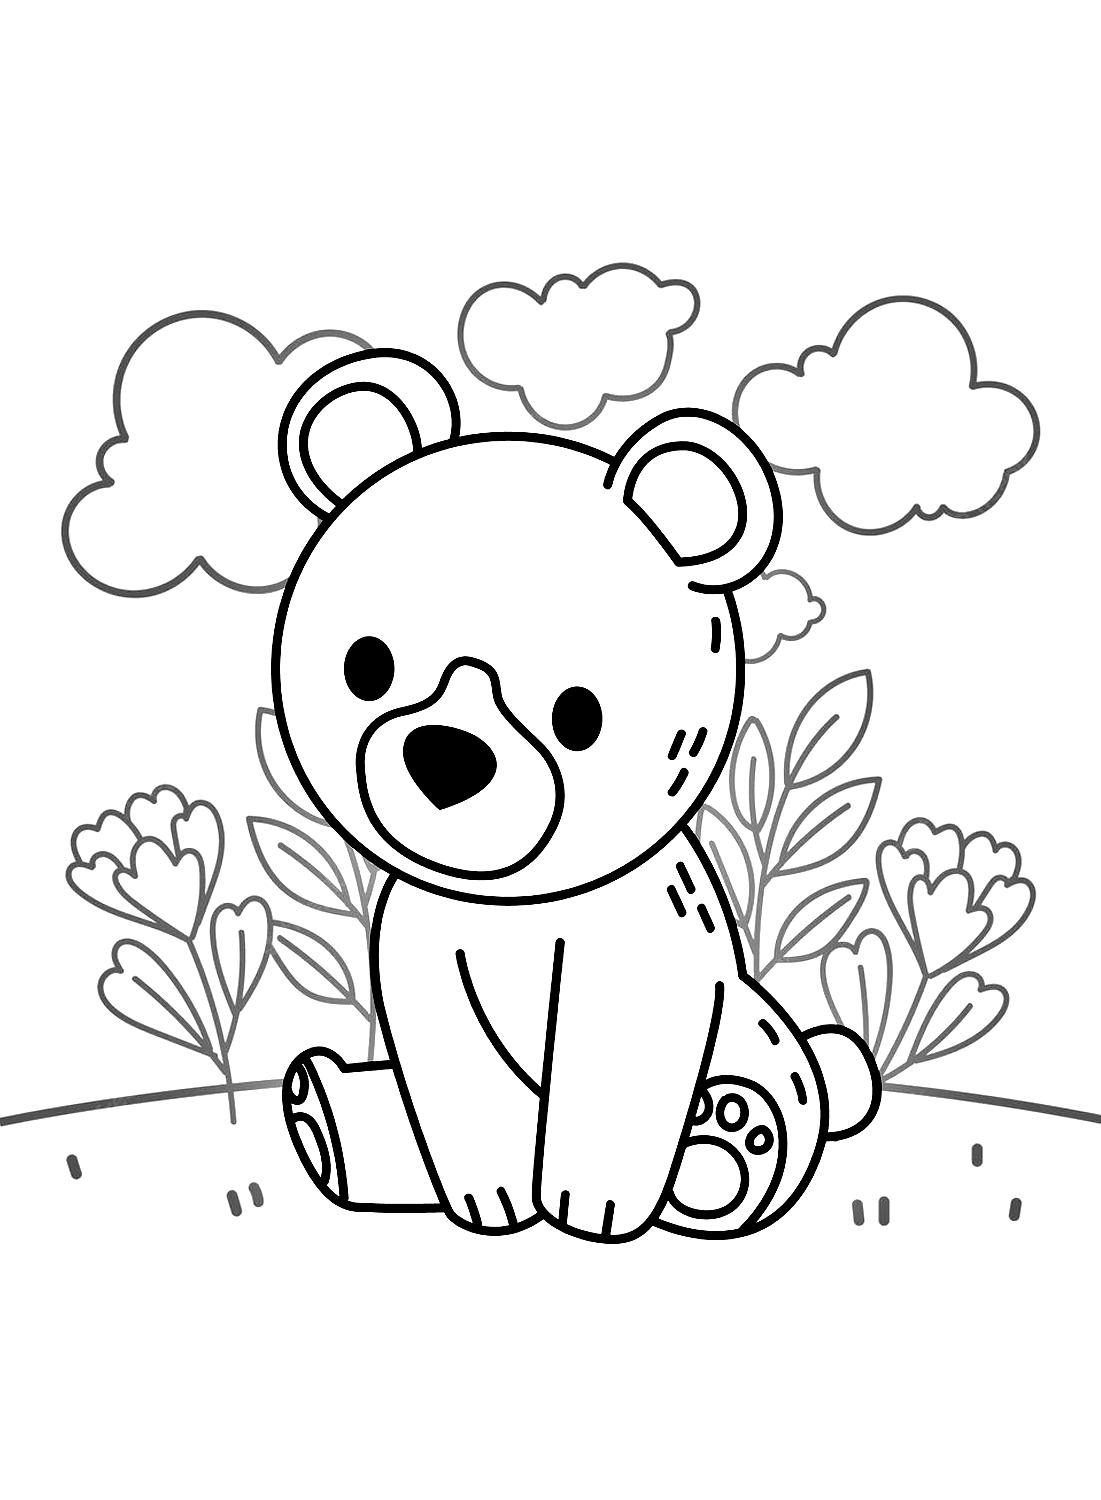 Kleurplaten van teddyberen van Teddy Bear